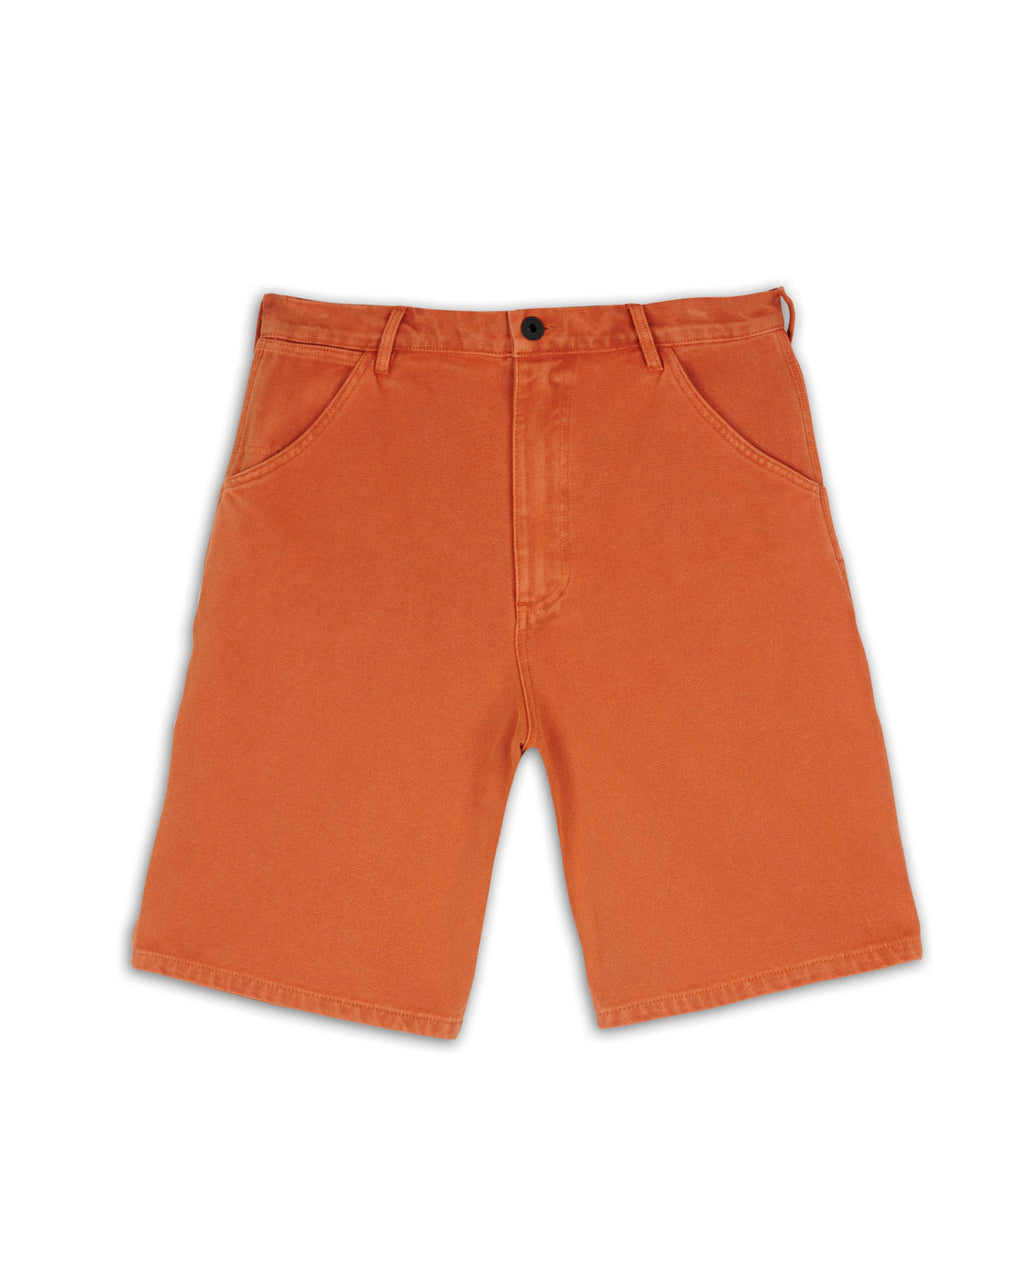 Washed Hard Ware/Soft Wear Carpenter Short - Burnt Orange 1